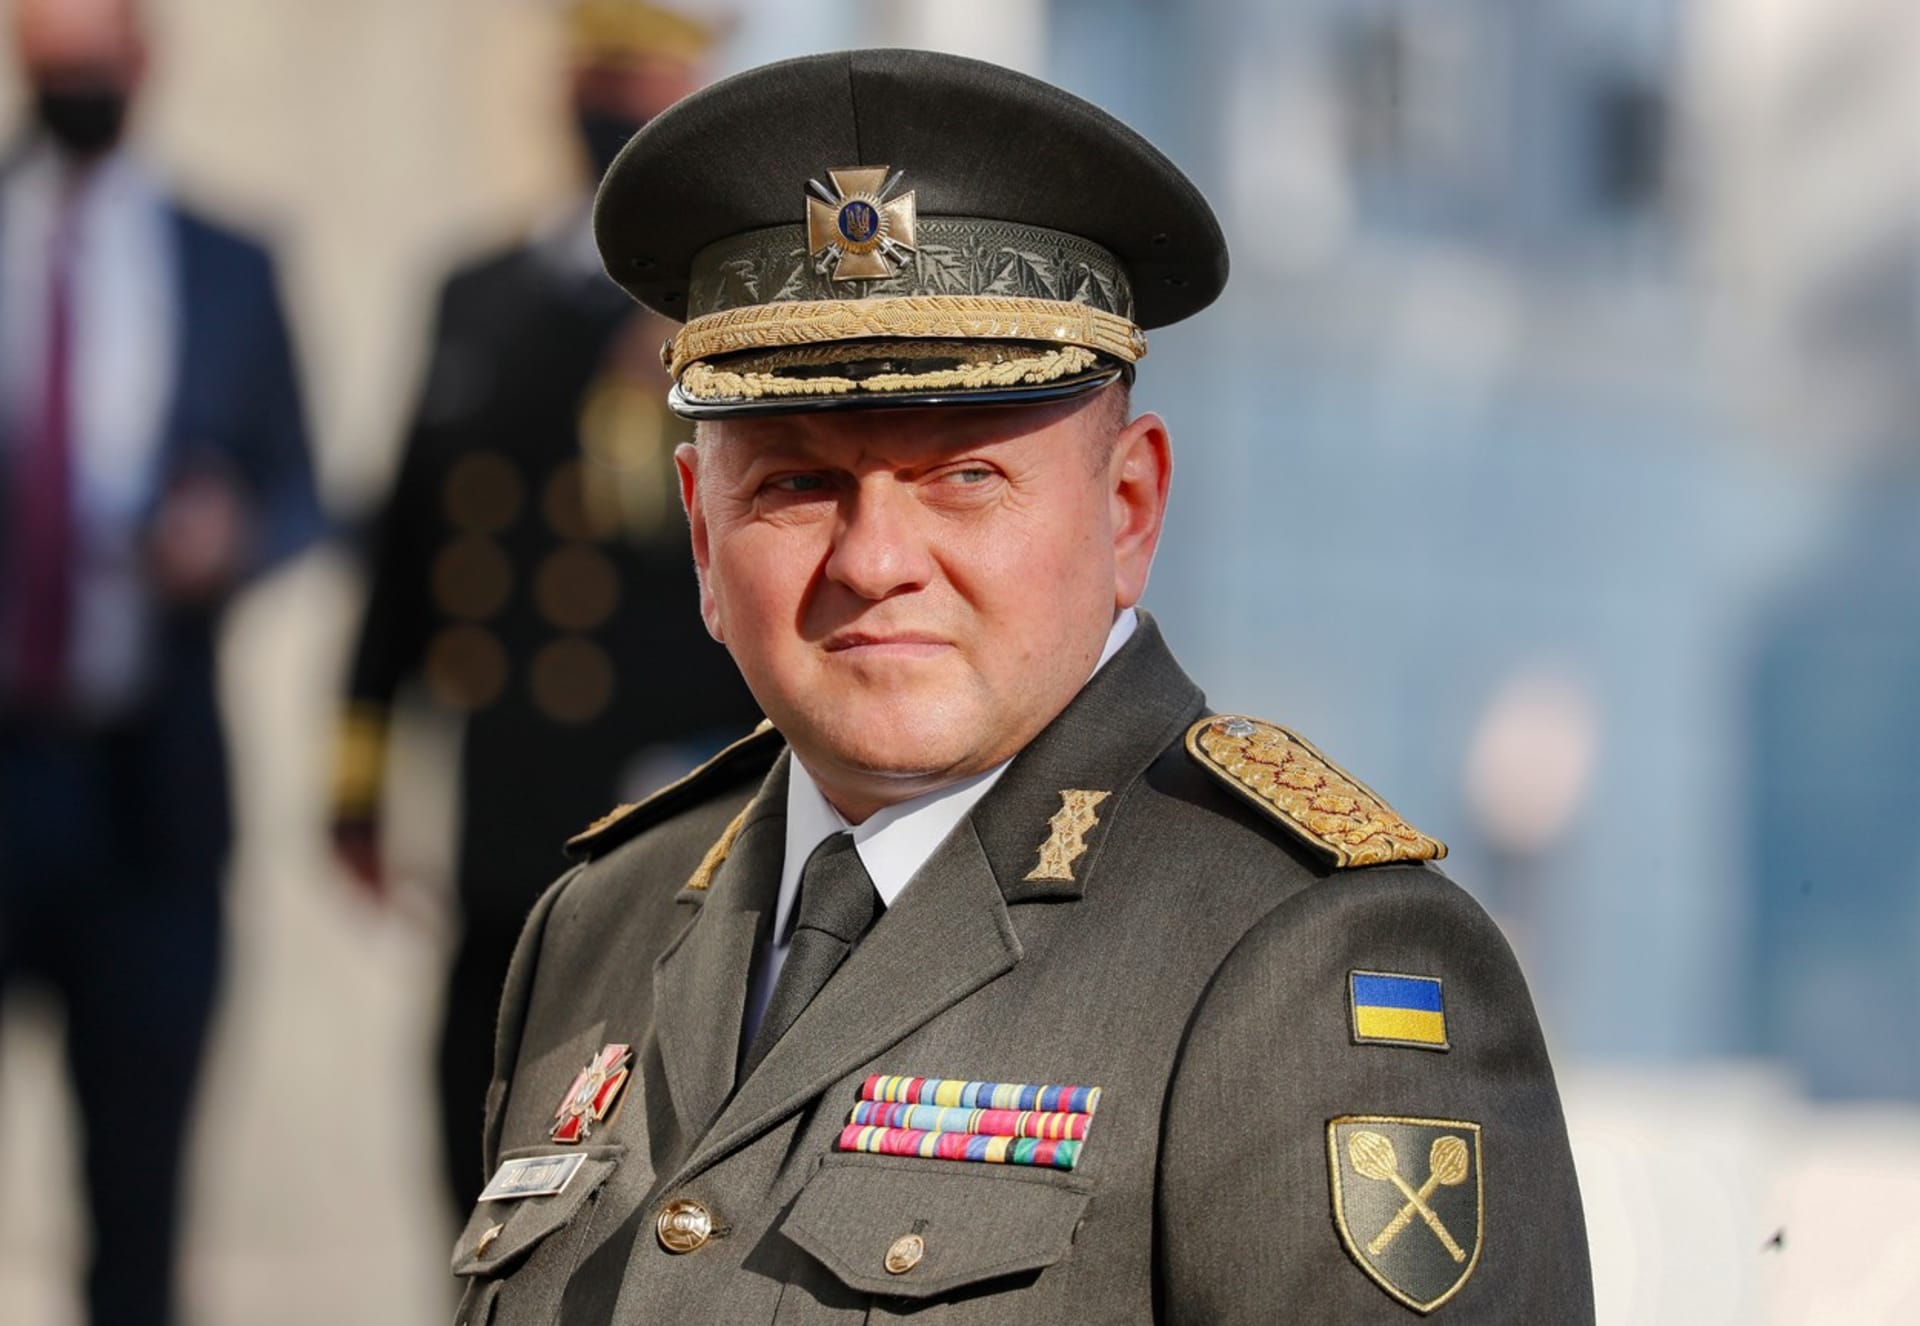 Generál Valerij Zalužnyj je velitelem Ozbrojených sil Ukrajiny (snímek z 19. října 2021).